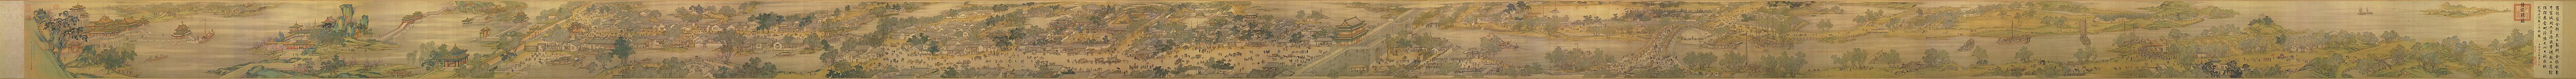 本圖描繪了清明時節北宋京城汴梁及汴河兩岸的熱鬧景象和自然風光。